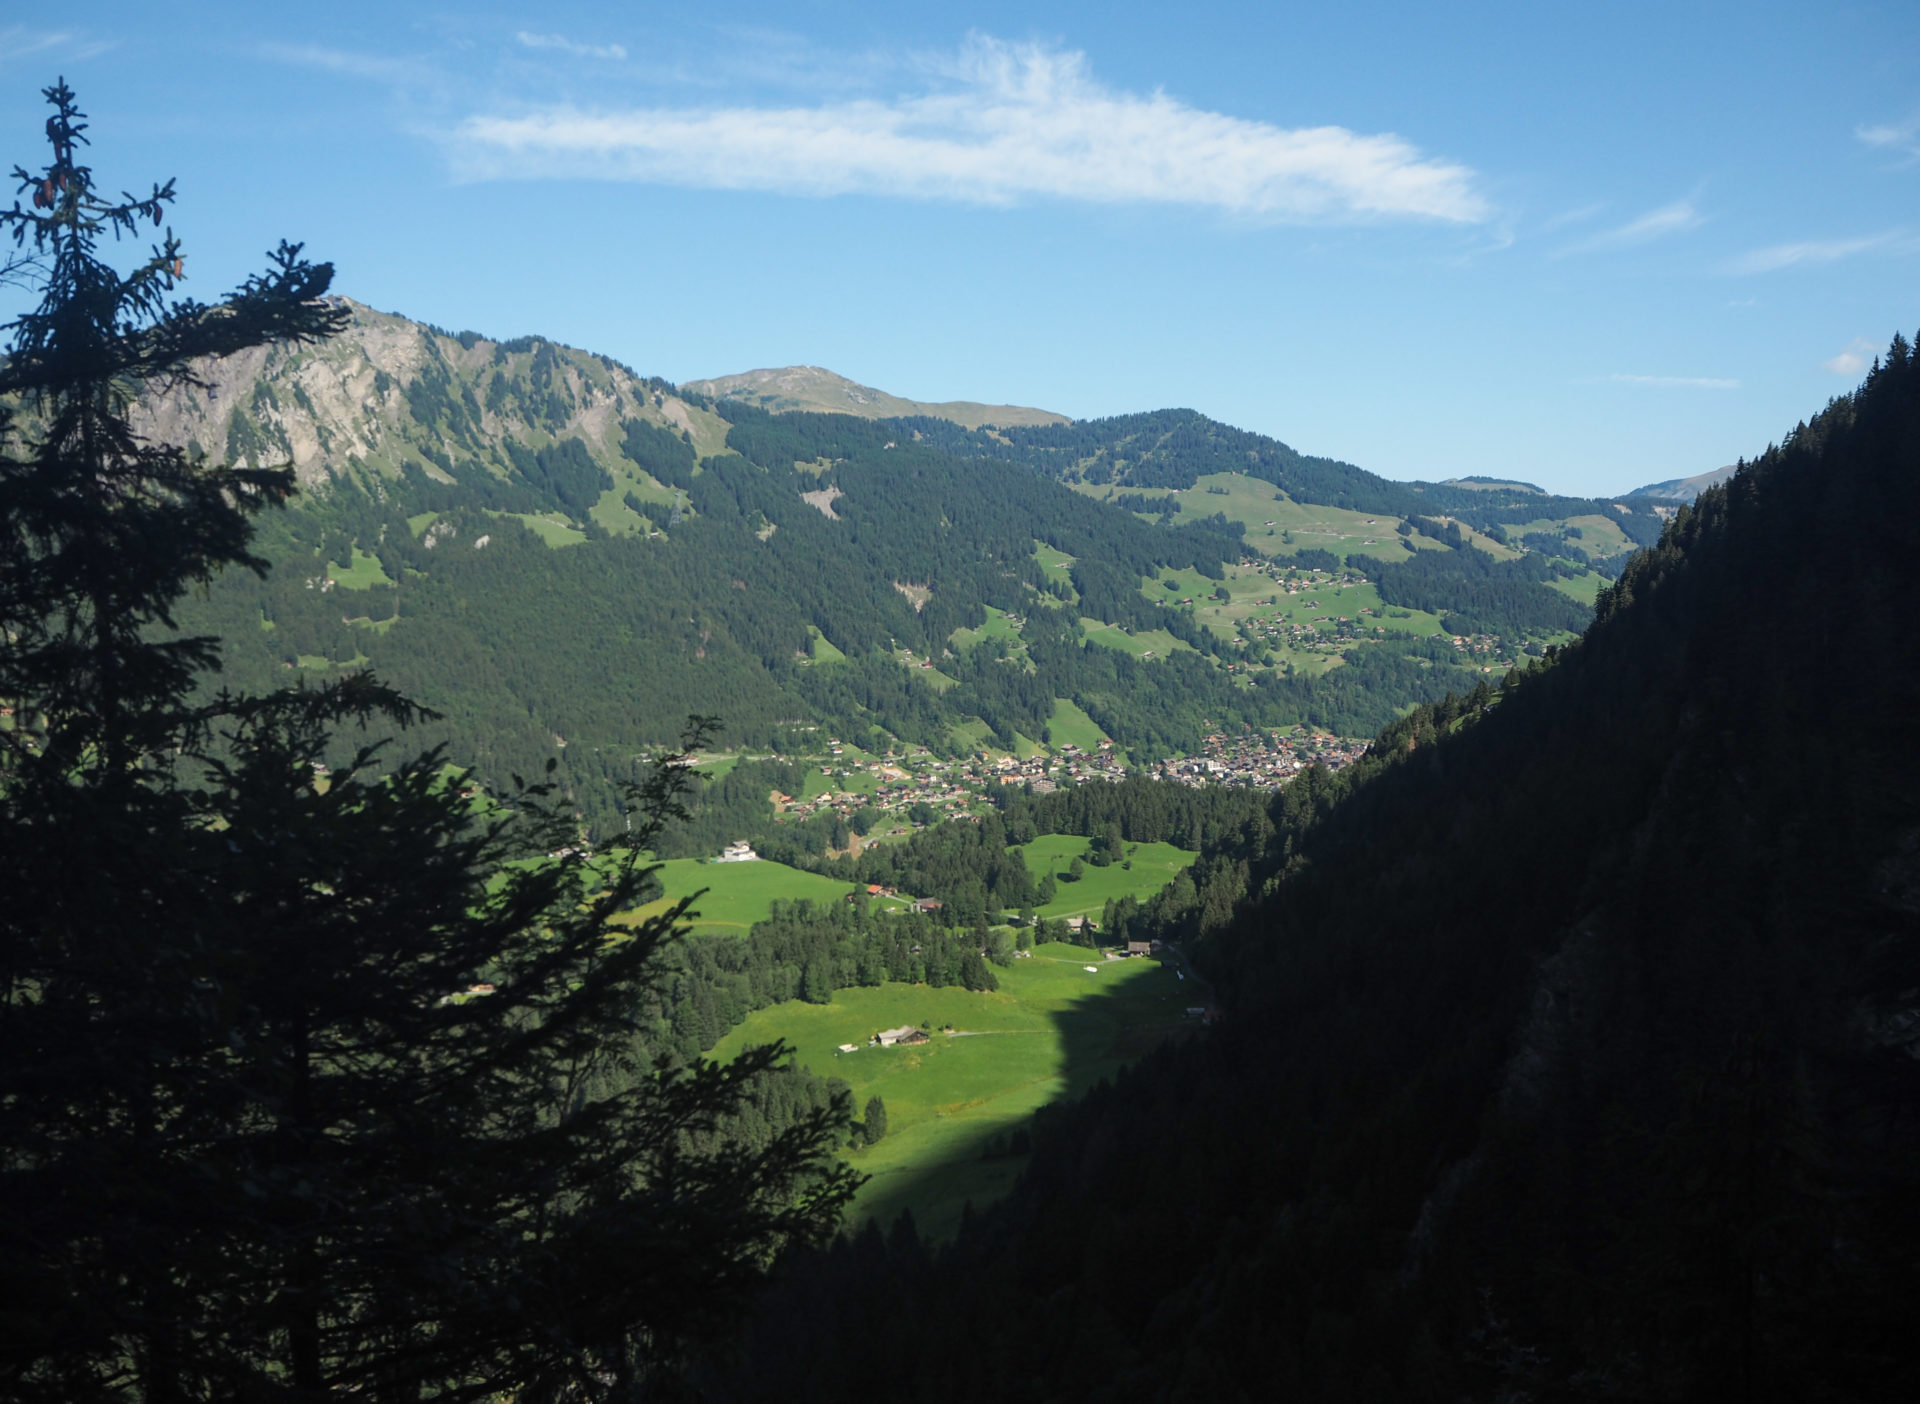 Vue sur la vallée de Champéry - Faire le Tour des Dents du Midi en 6 jours en solo et en mode slow - Une randonnée itinérante, un trek à découvrir en Suisse dans le Valais